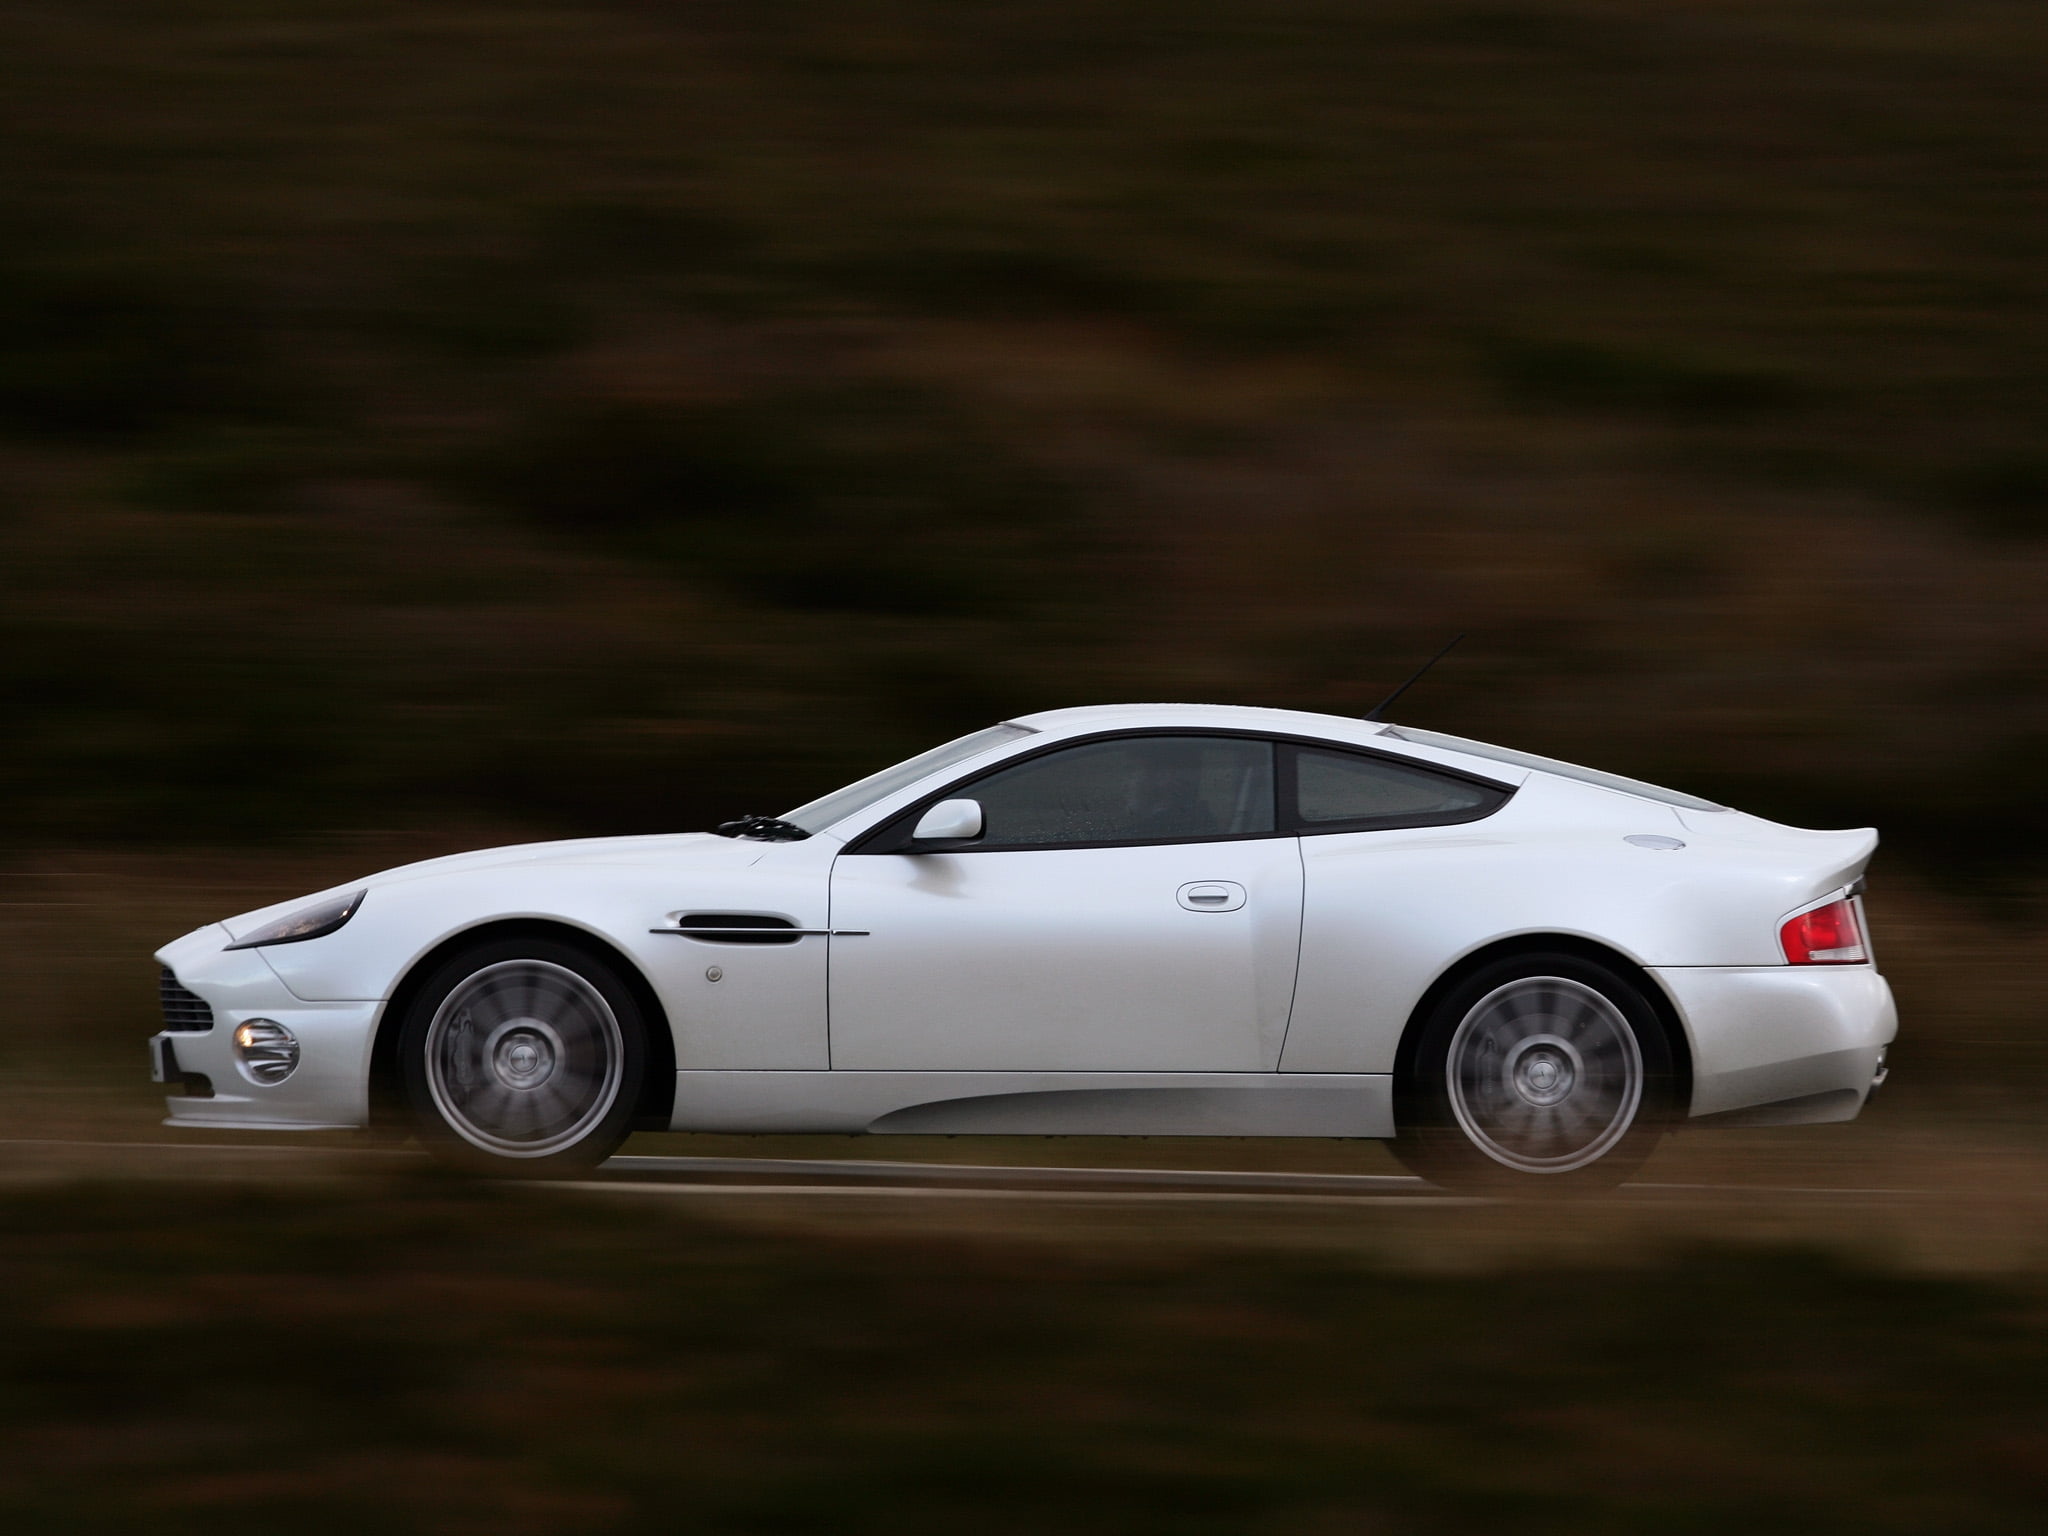 white Aston Martin supercar